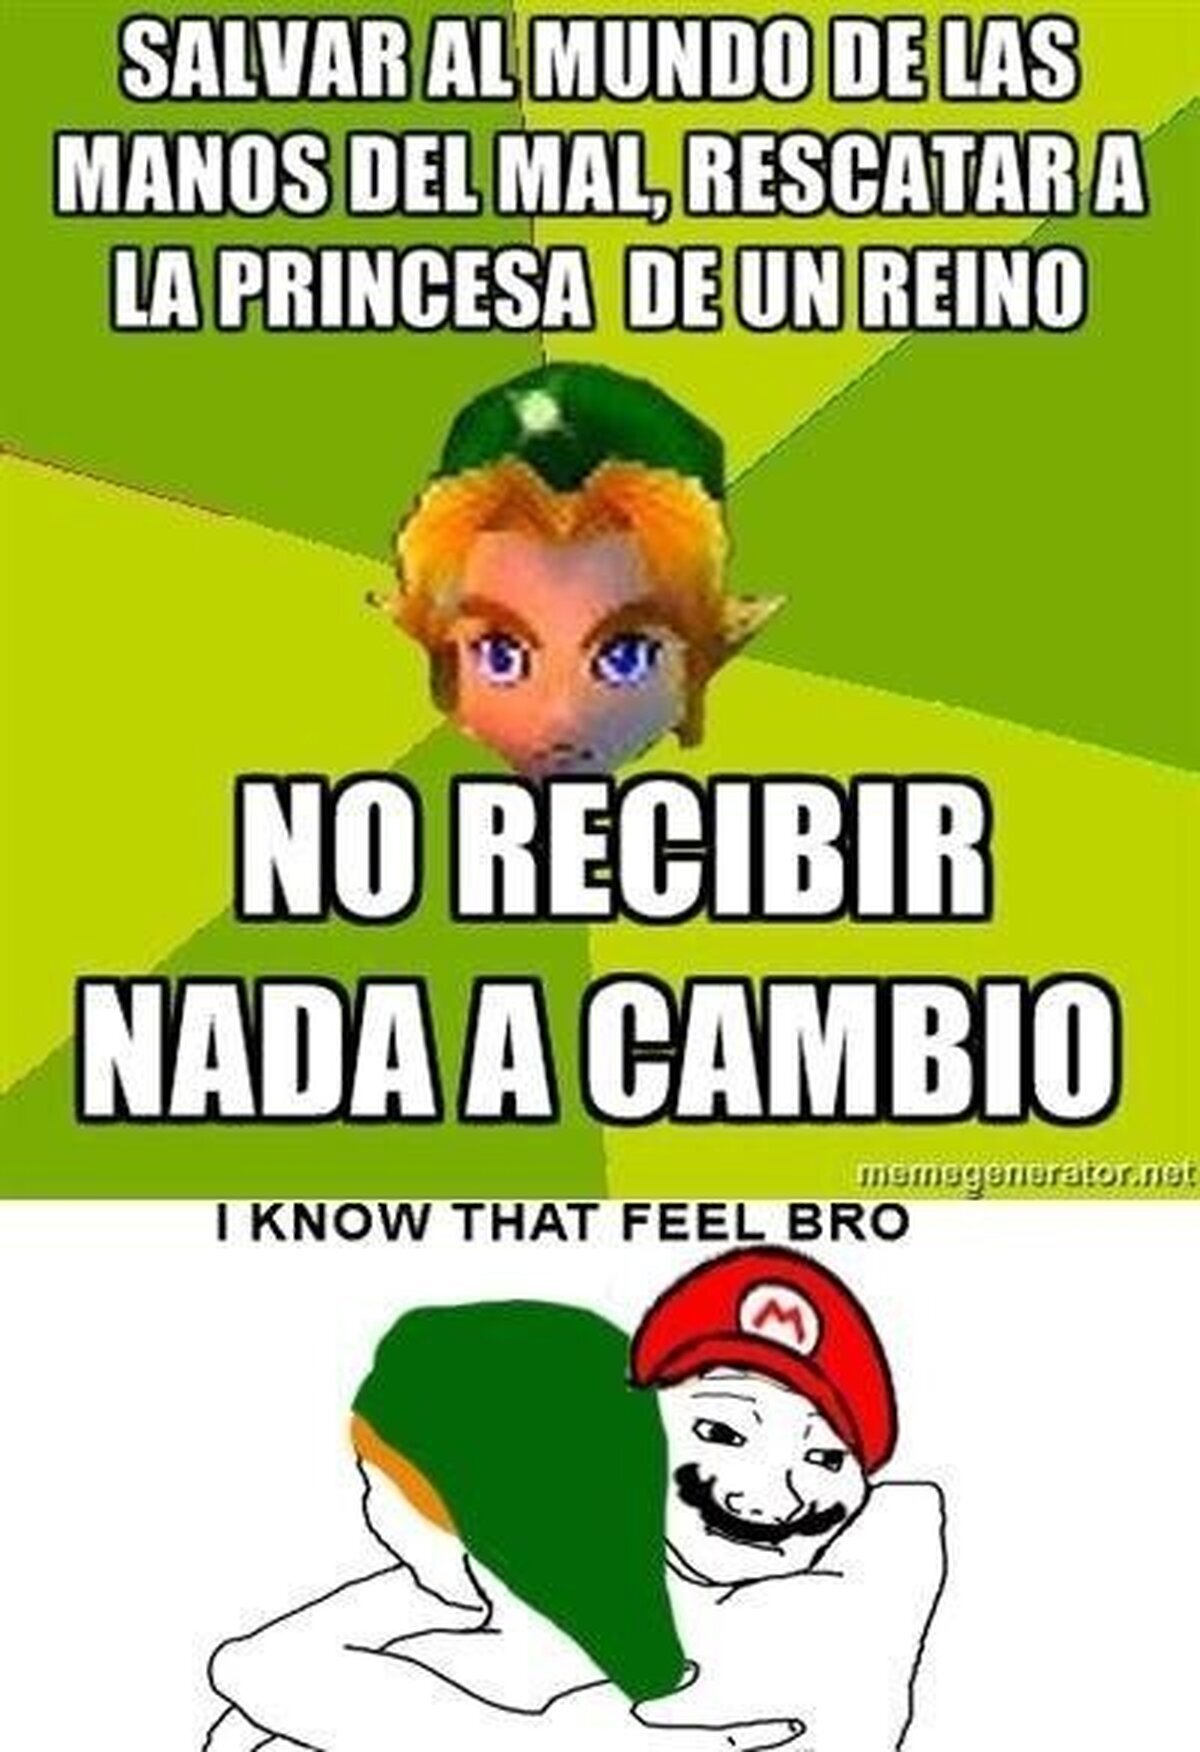 Link y Mario se comprenden bien